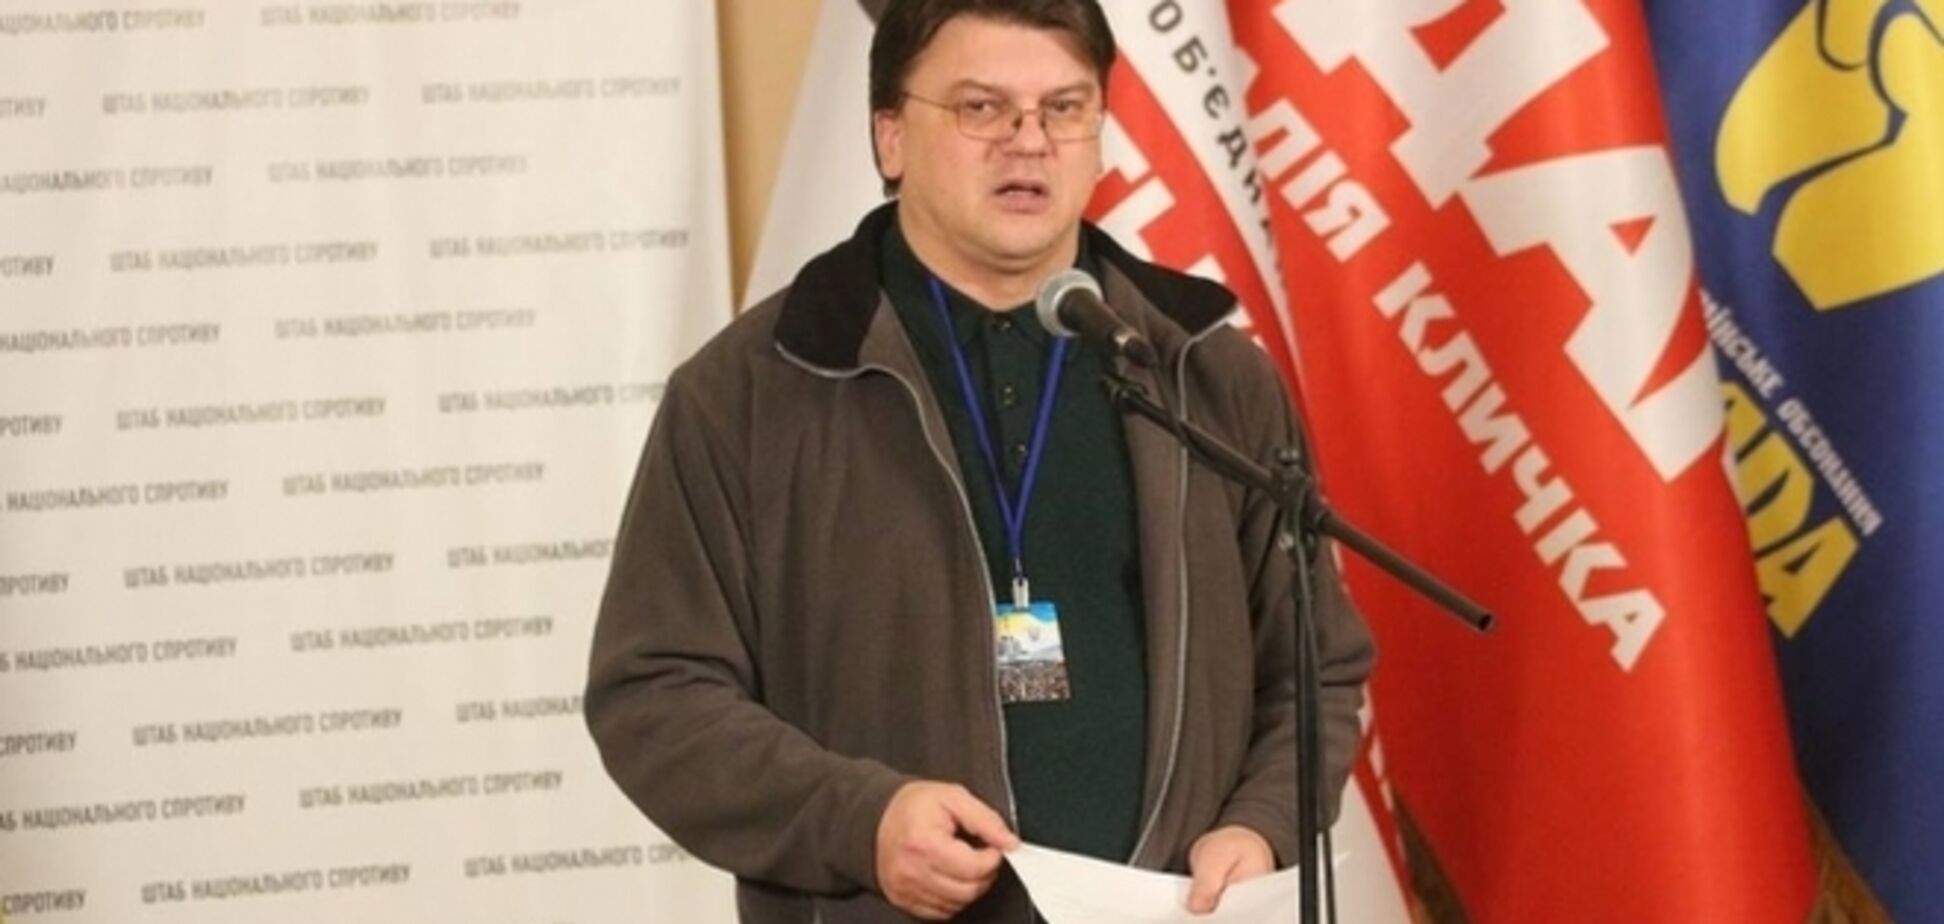 Зачем Тимошенко спорт? Реакция экспертов на назначение нового министра спорта